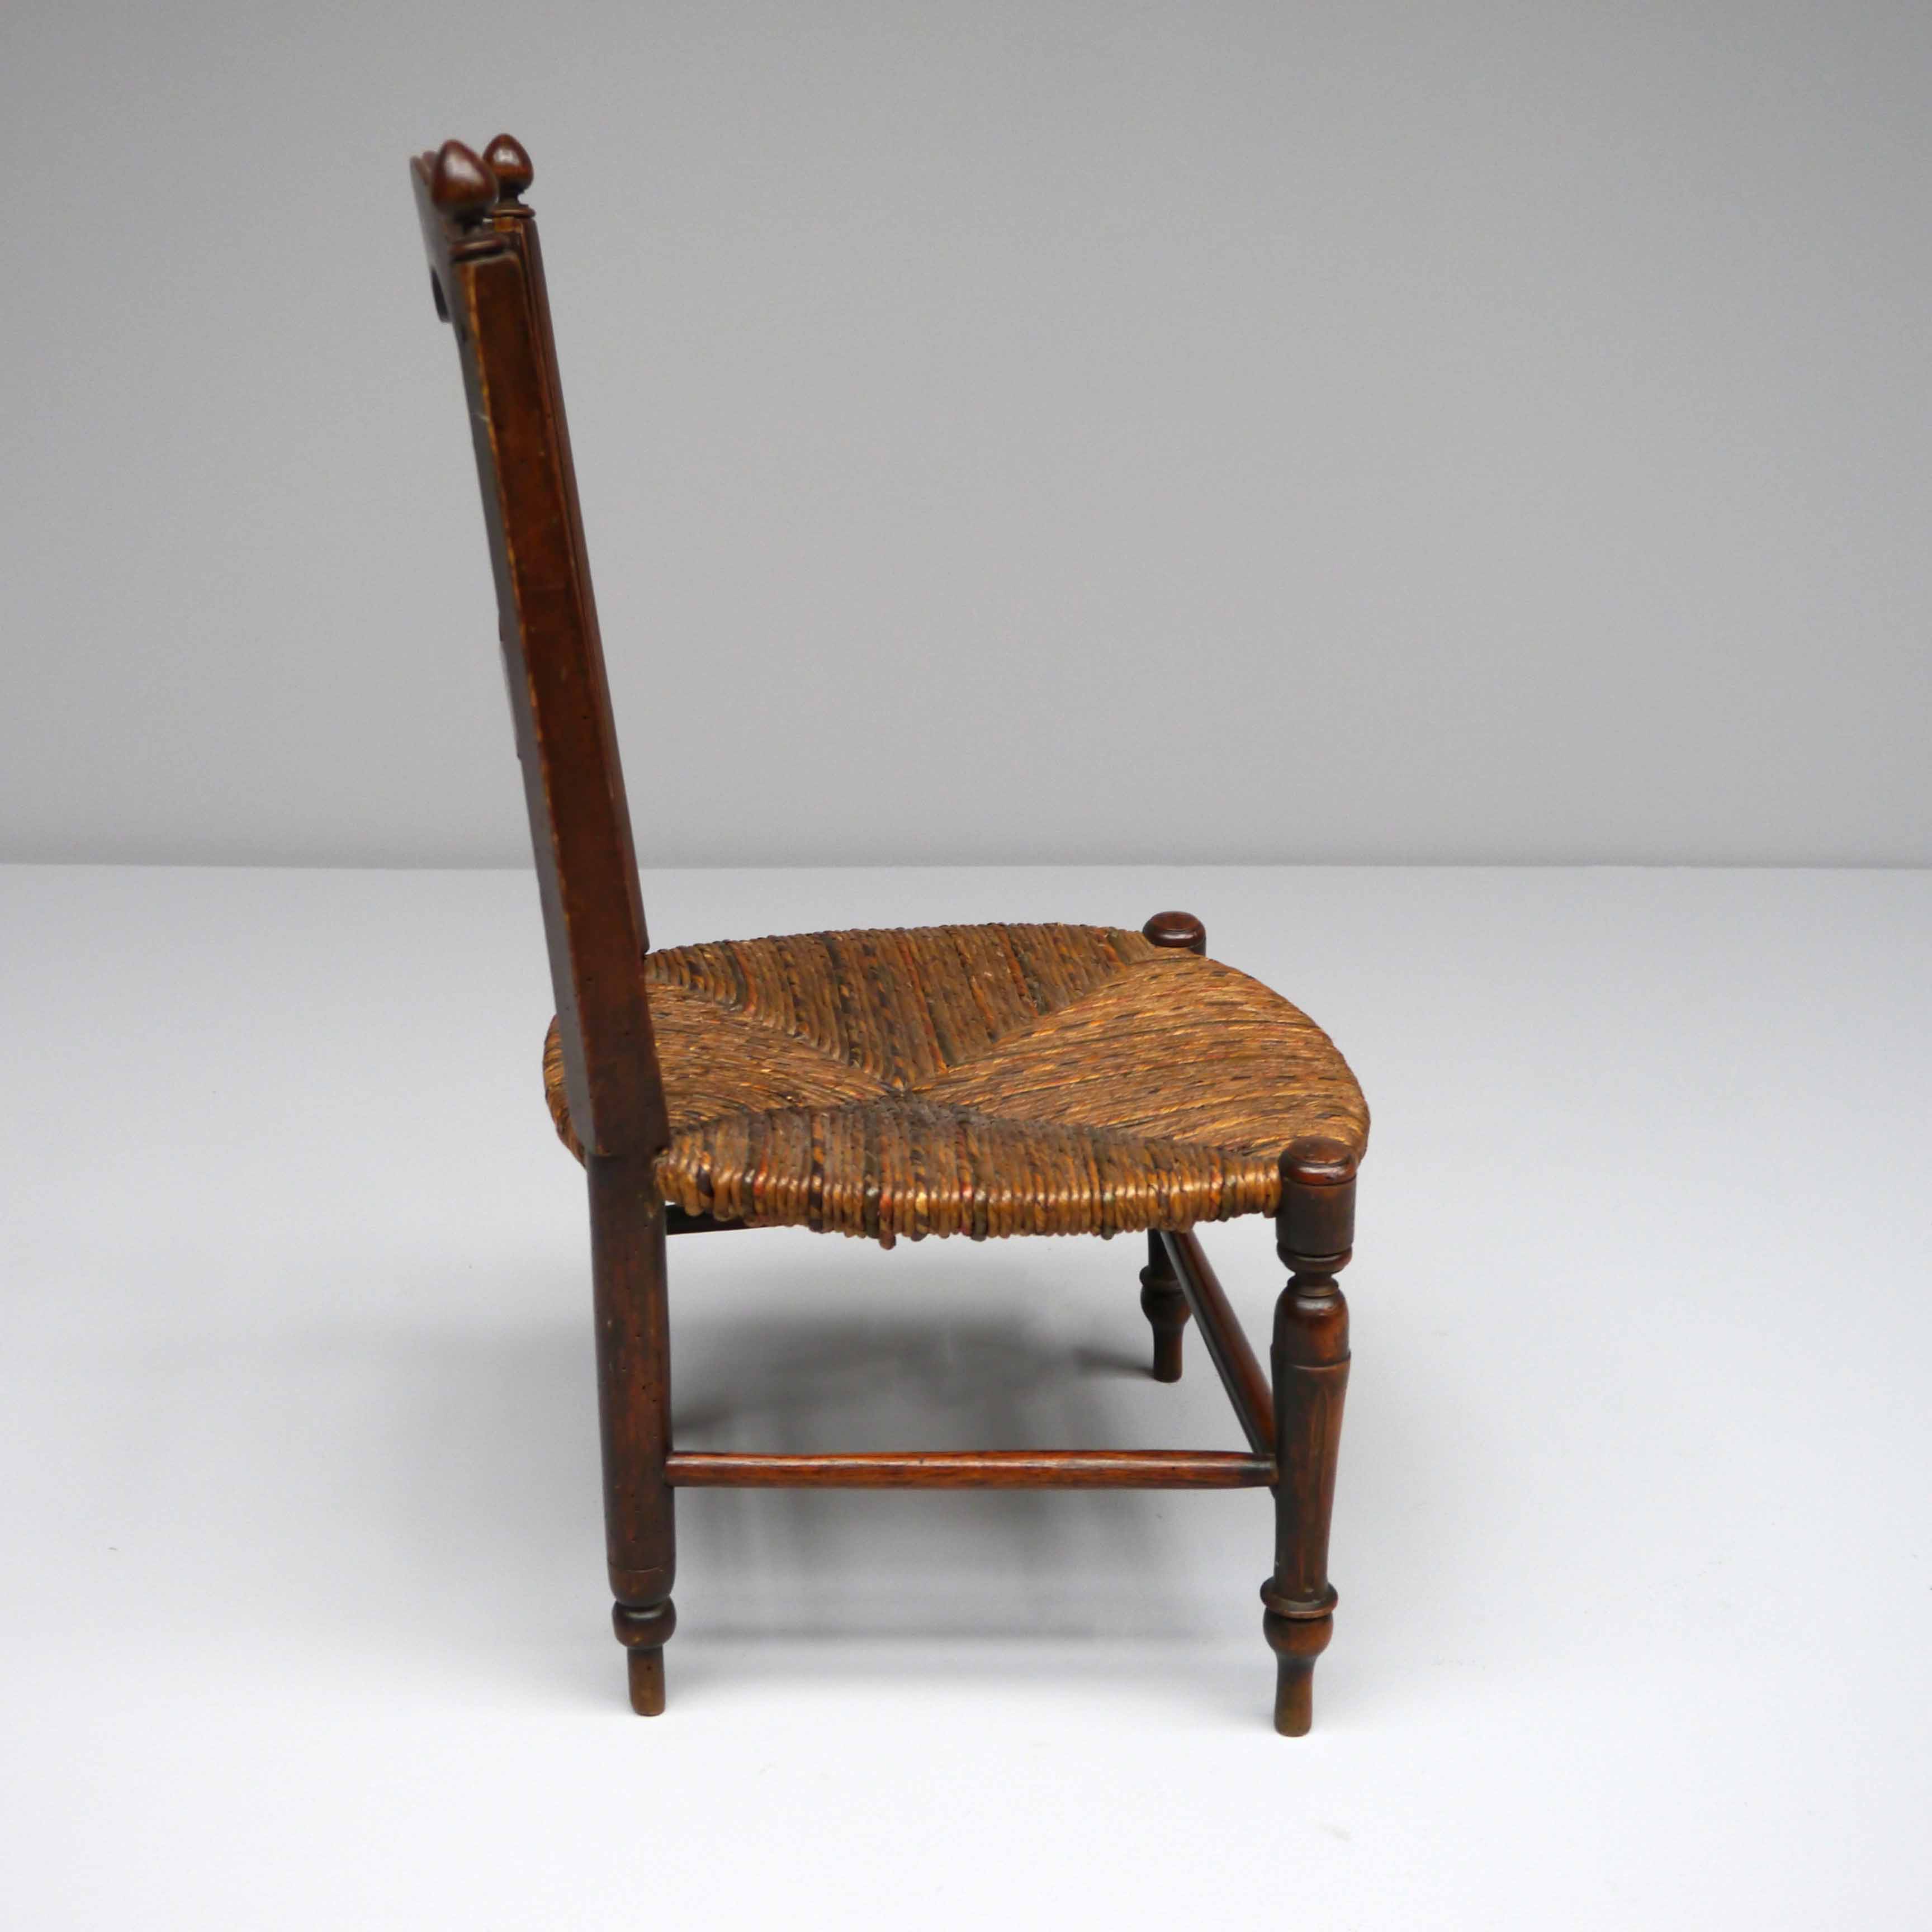 19th century french children’s chair